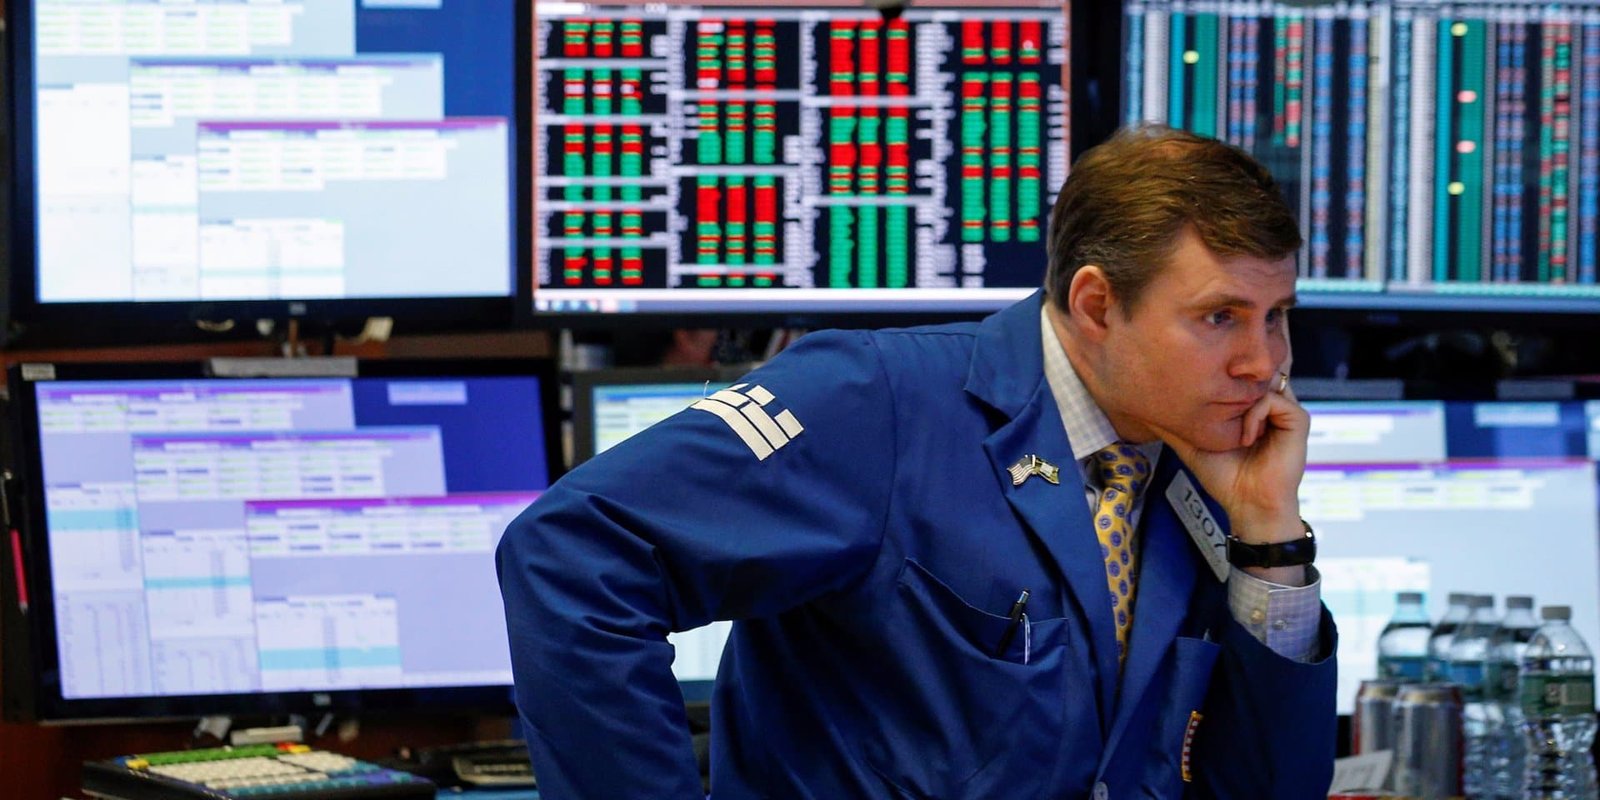 trader at stock market looking at scree